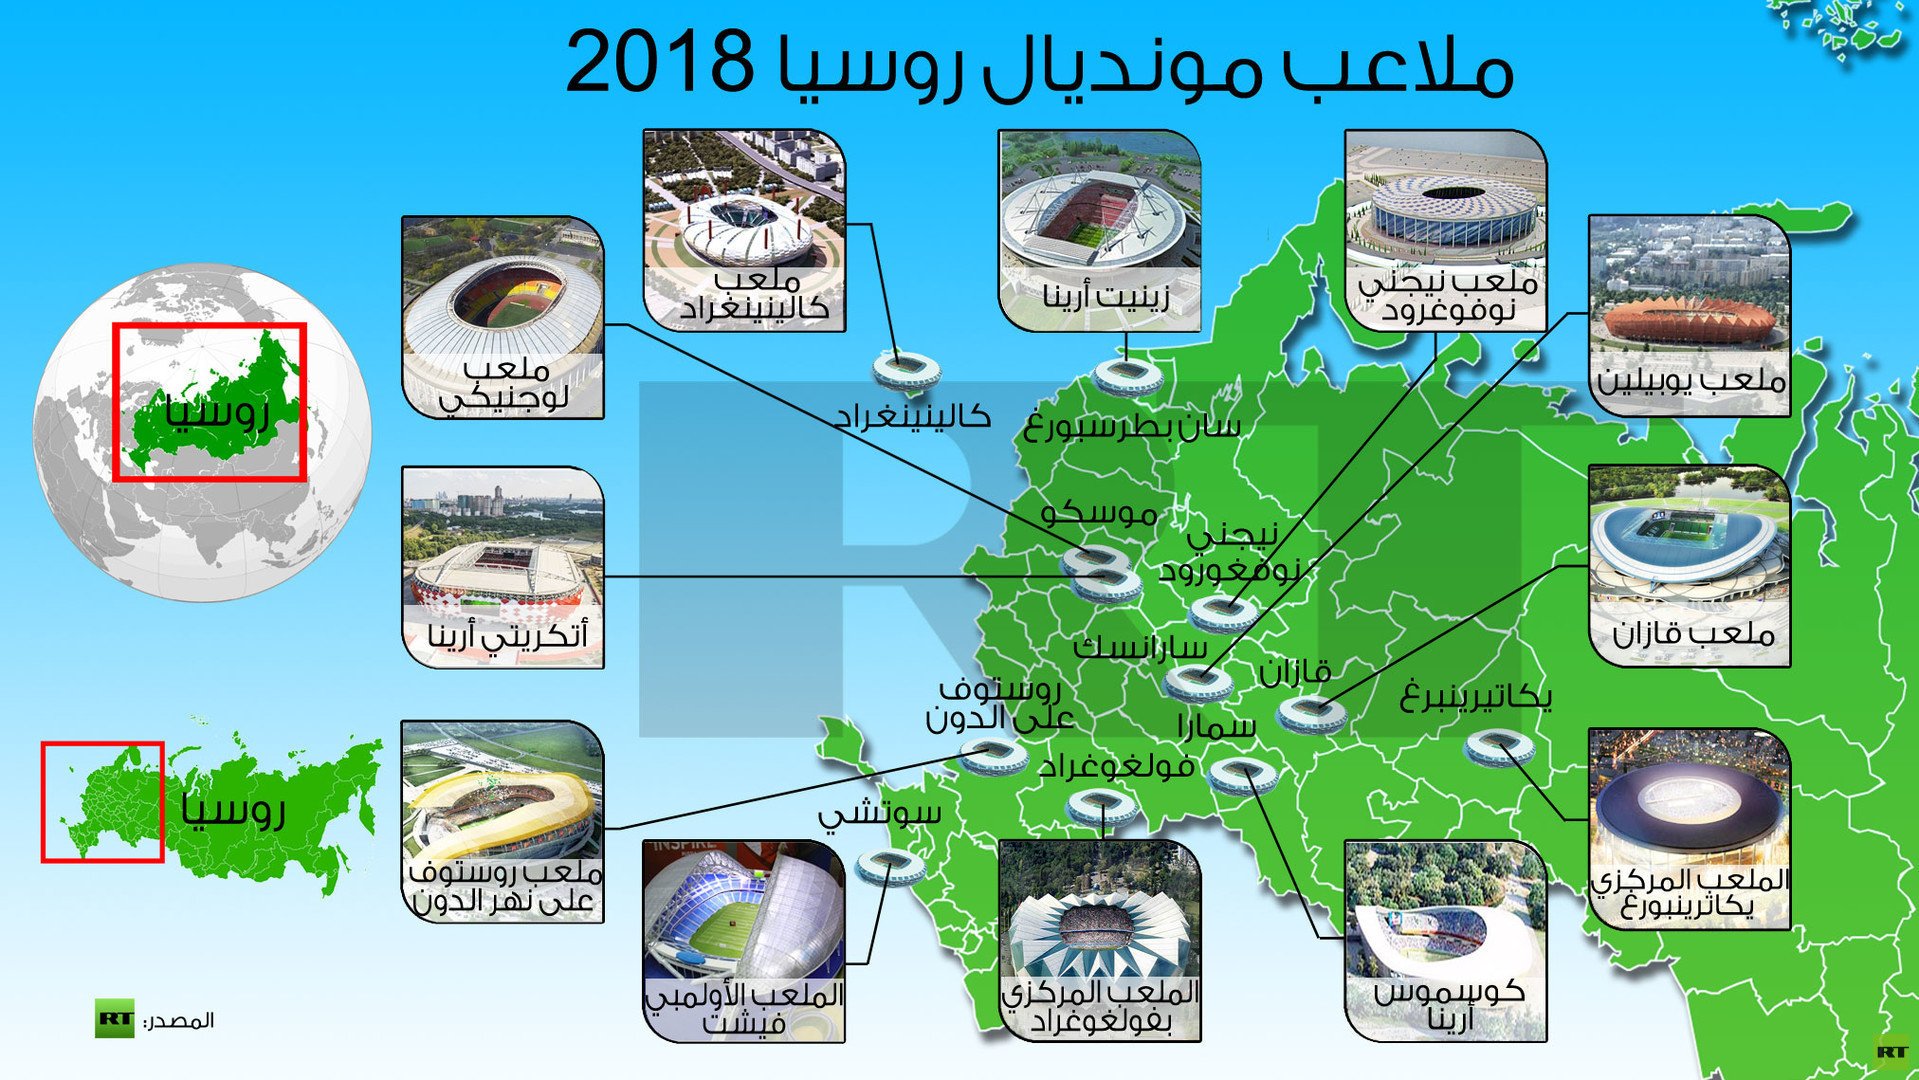 تحضيرات ملعب فيشت الأولمبي لمونديال 2018 تسير وفق الجدول الزمني المخطط